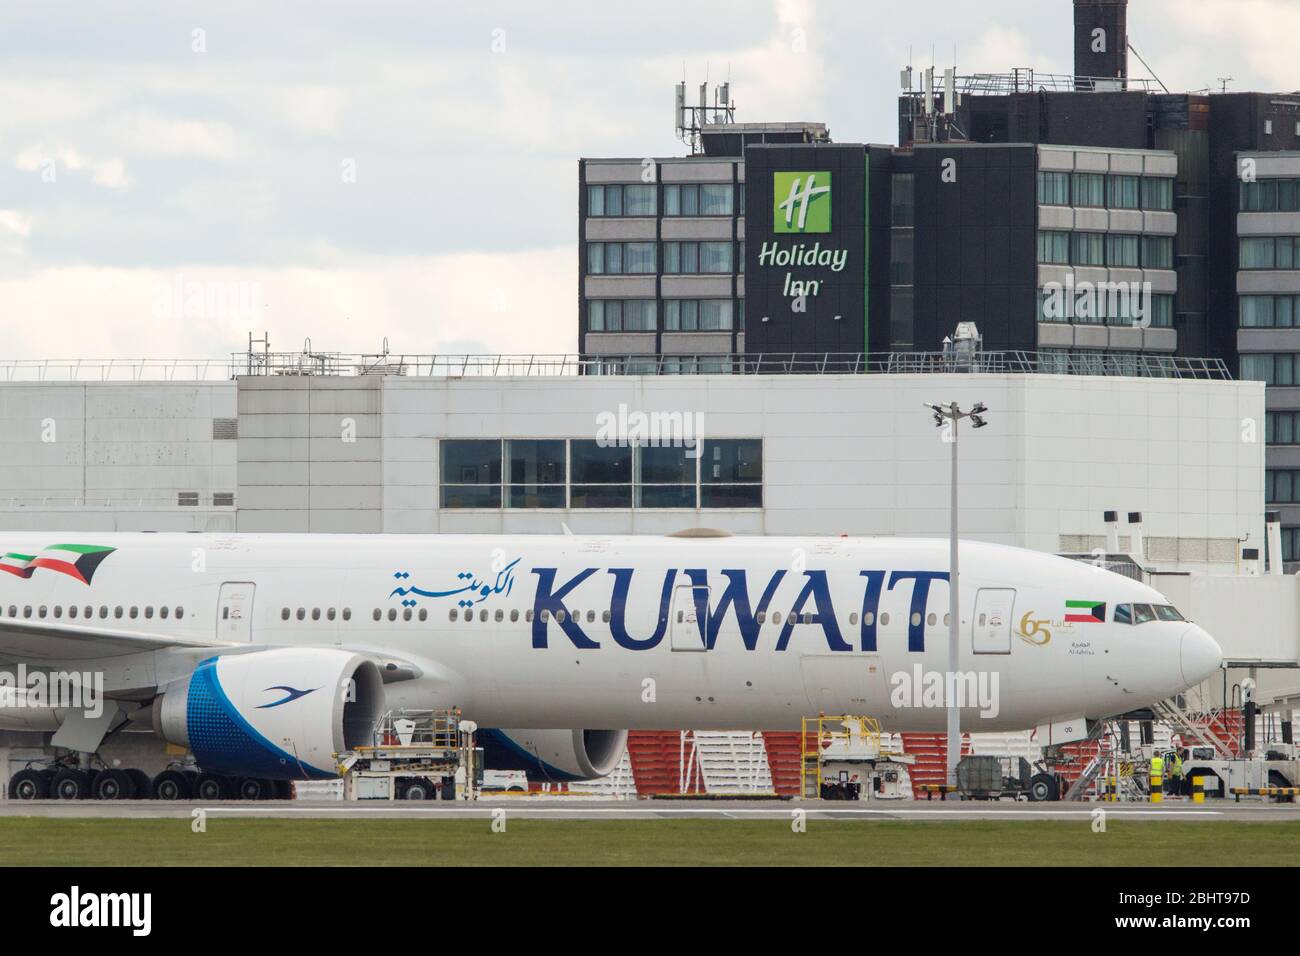 Glasgow, Großbritannien. April 2020. Im Bild: Ein Boeing 777-300 Flugzeug von Kuwait Airways, das gerade am Flughafen Glasgow gegen 11.40 Uhr gelandet ist, heute während der verlängerten Sperrung des Coronavirus (COVID19). Kuwait Airways schließt die zweite Phase der Rückführungsflüge für Kuwait-Staatsangehörige ab, die aufgrund des Coronavirus-Ausbruchs im Ausland gestrandet sind. Glasgow Airport hat derzeit keine Linienflüge von oder nach Kuwait, weshalb dieses Flugzeug in Glasgow gesehen ist sehr interessant. Stockfoto